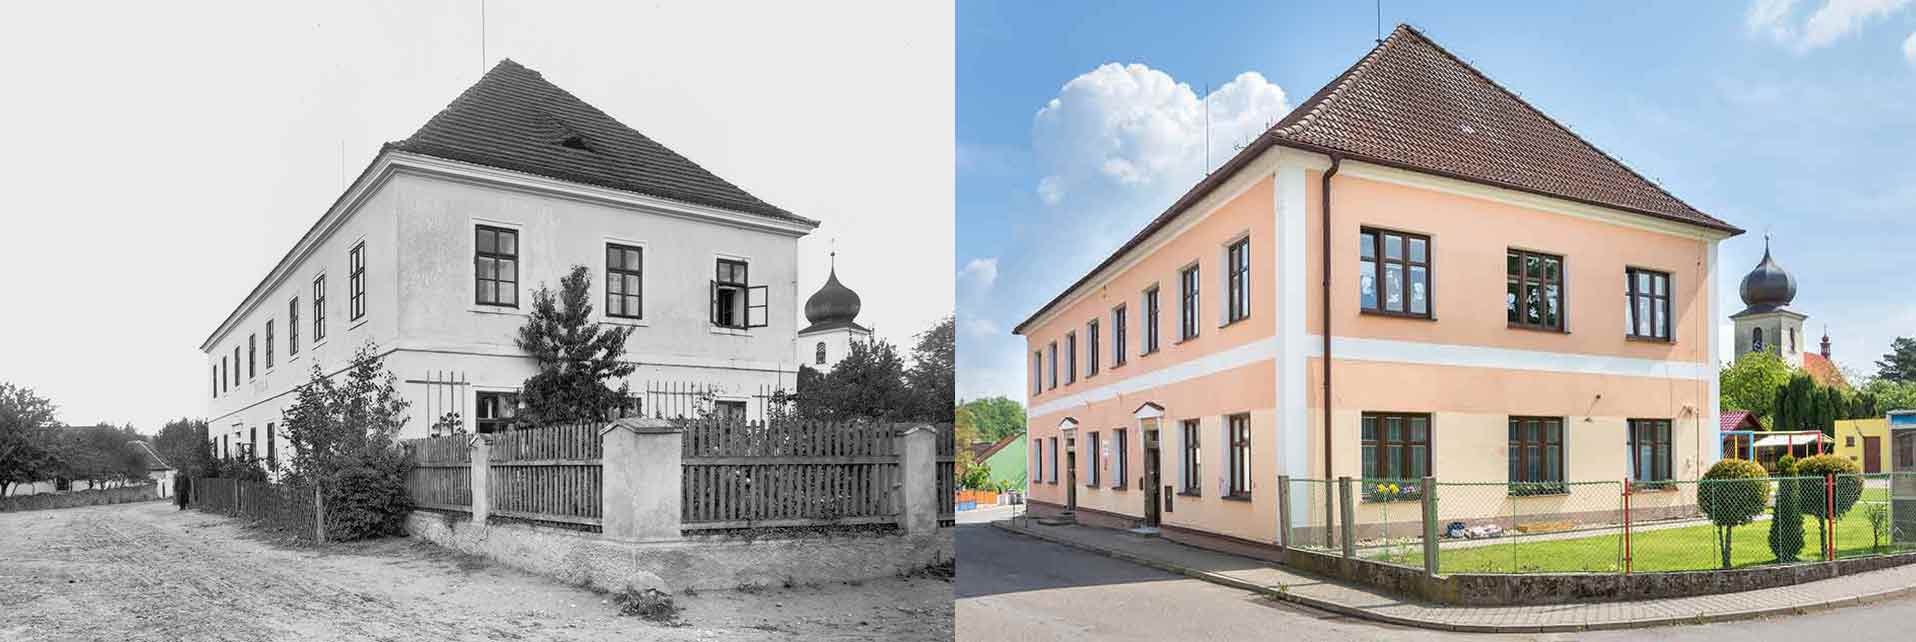 Lipoltice, obecná škola, postavena 1873 a dnešní pohled